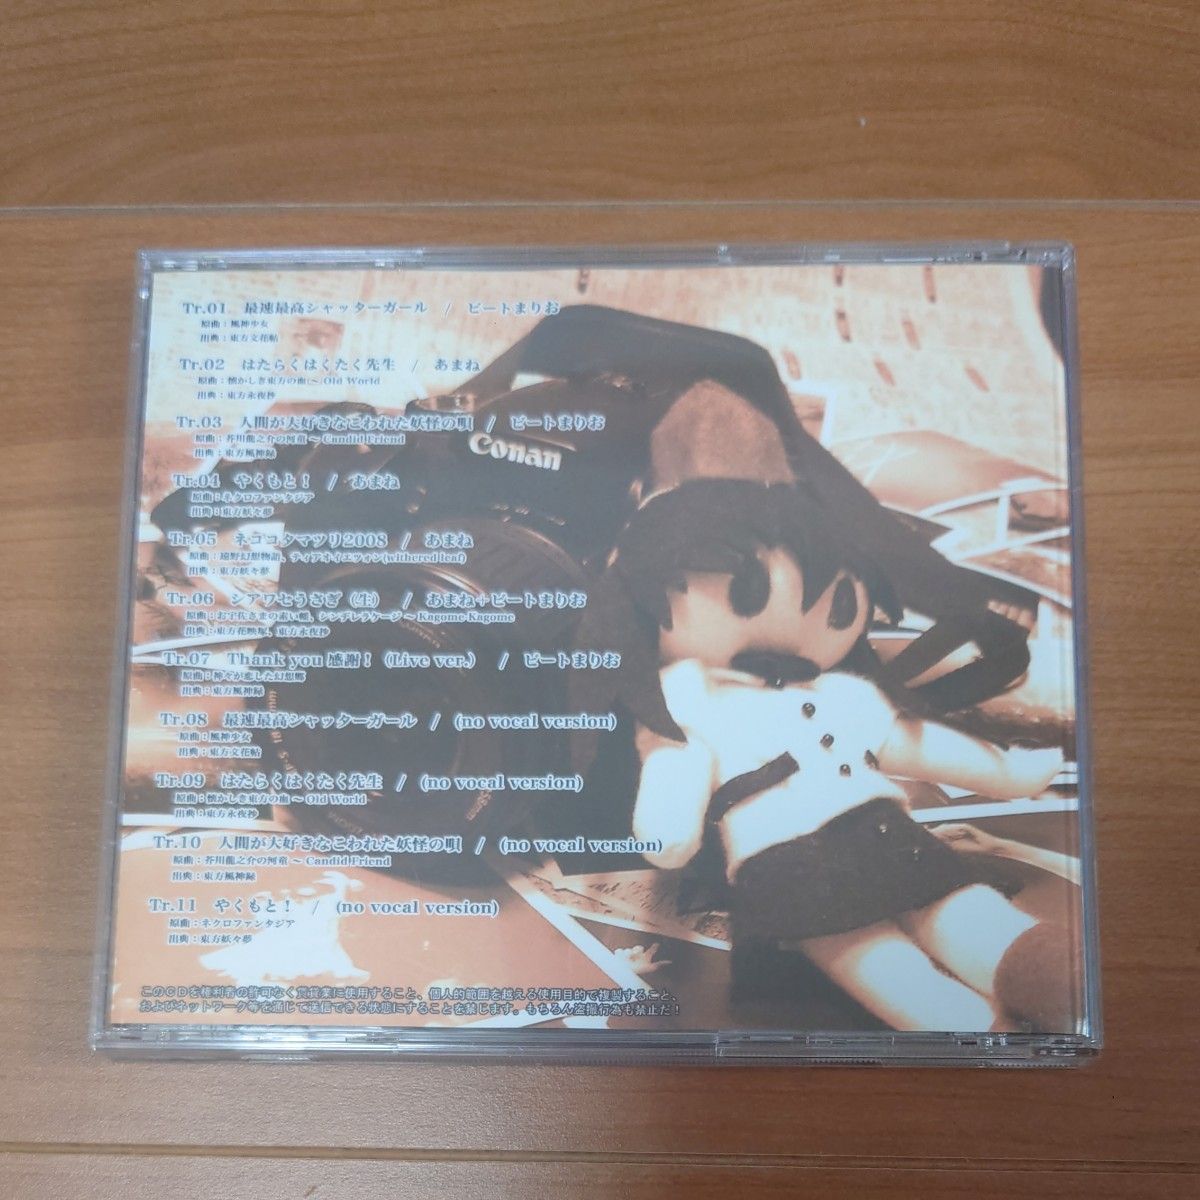 東方同人CD スーパーシャッターガール / COOL&CREATE